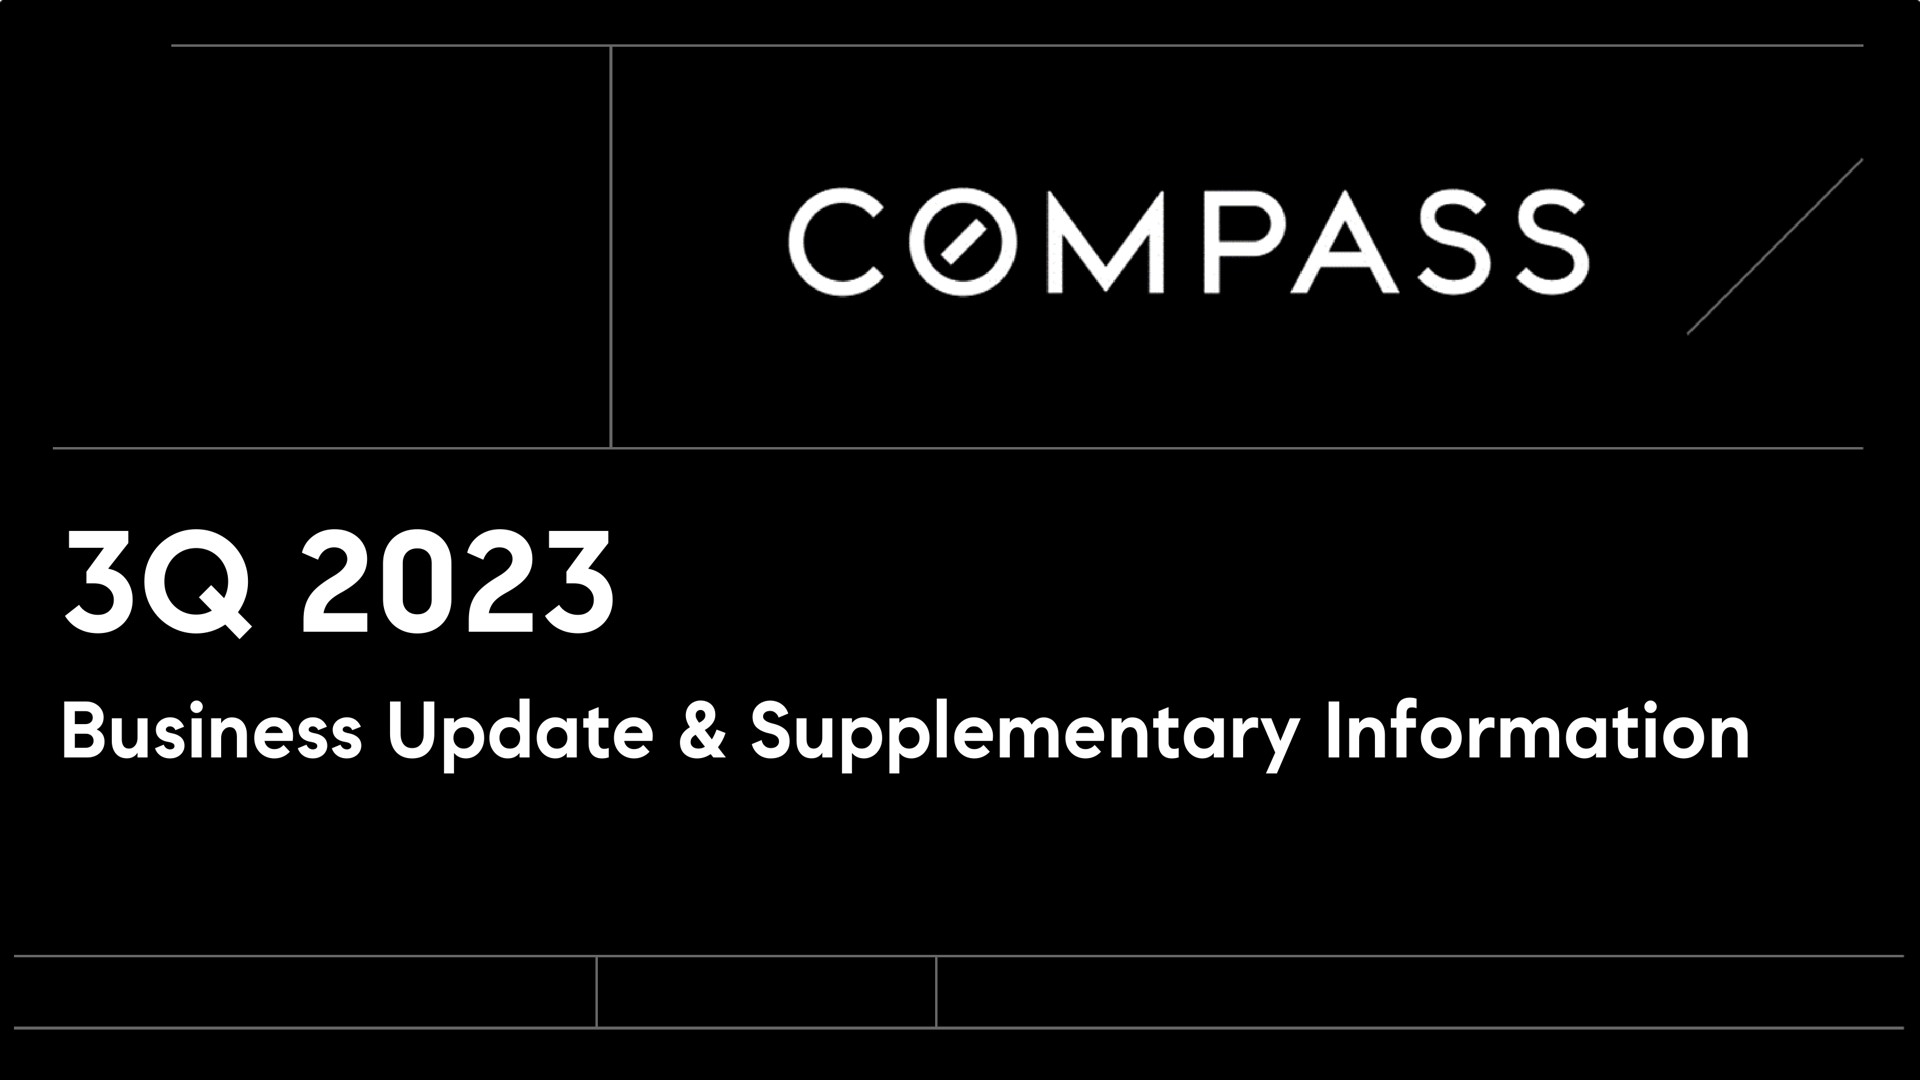 business update supplementary information compass | Compass